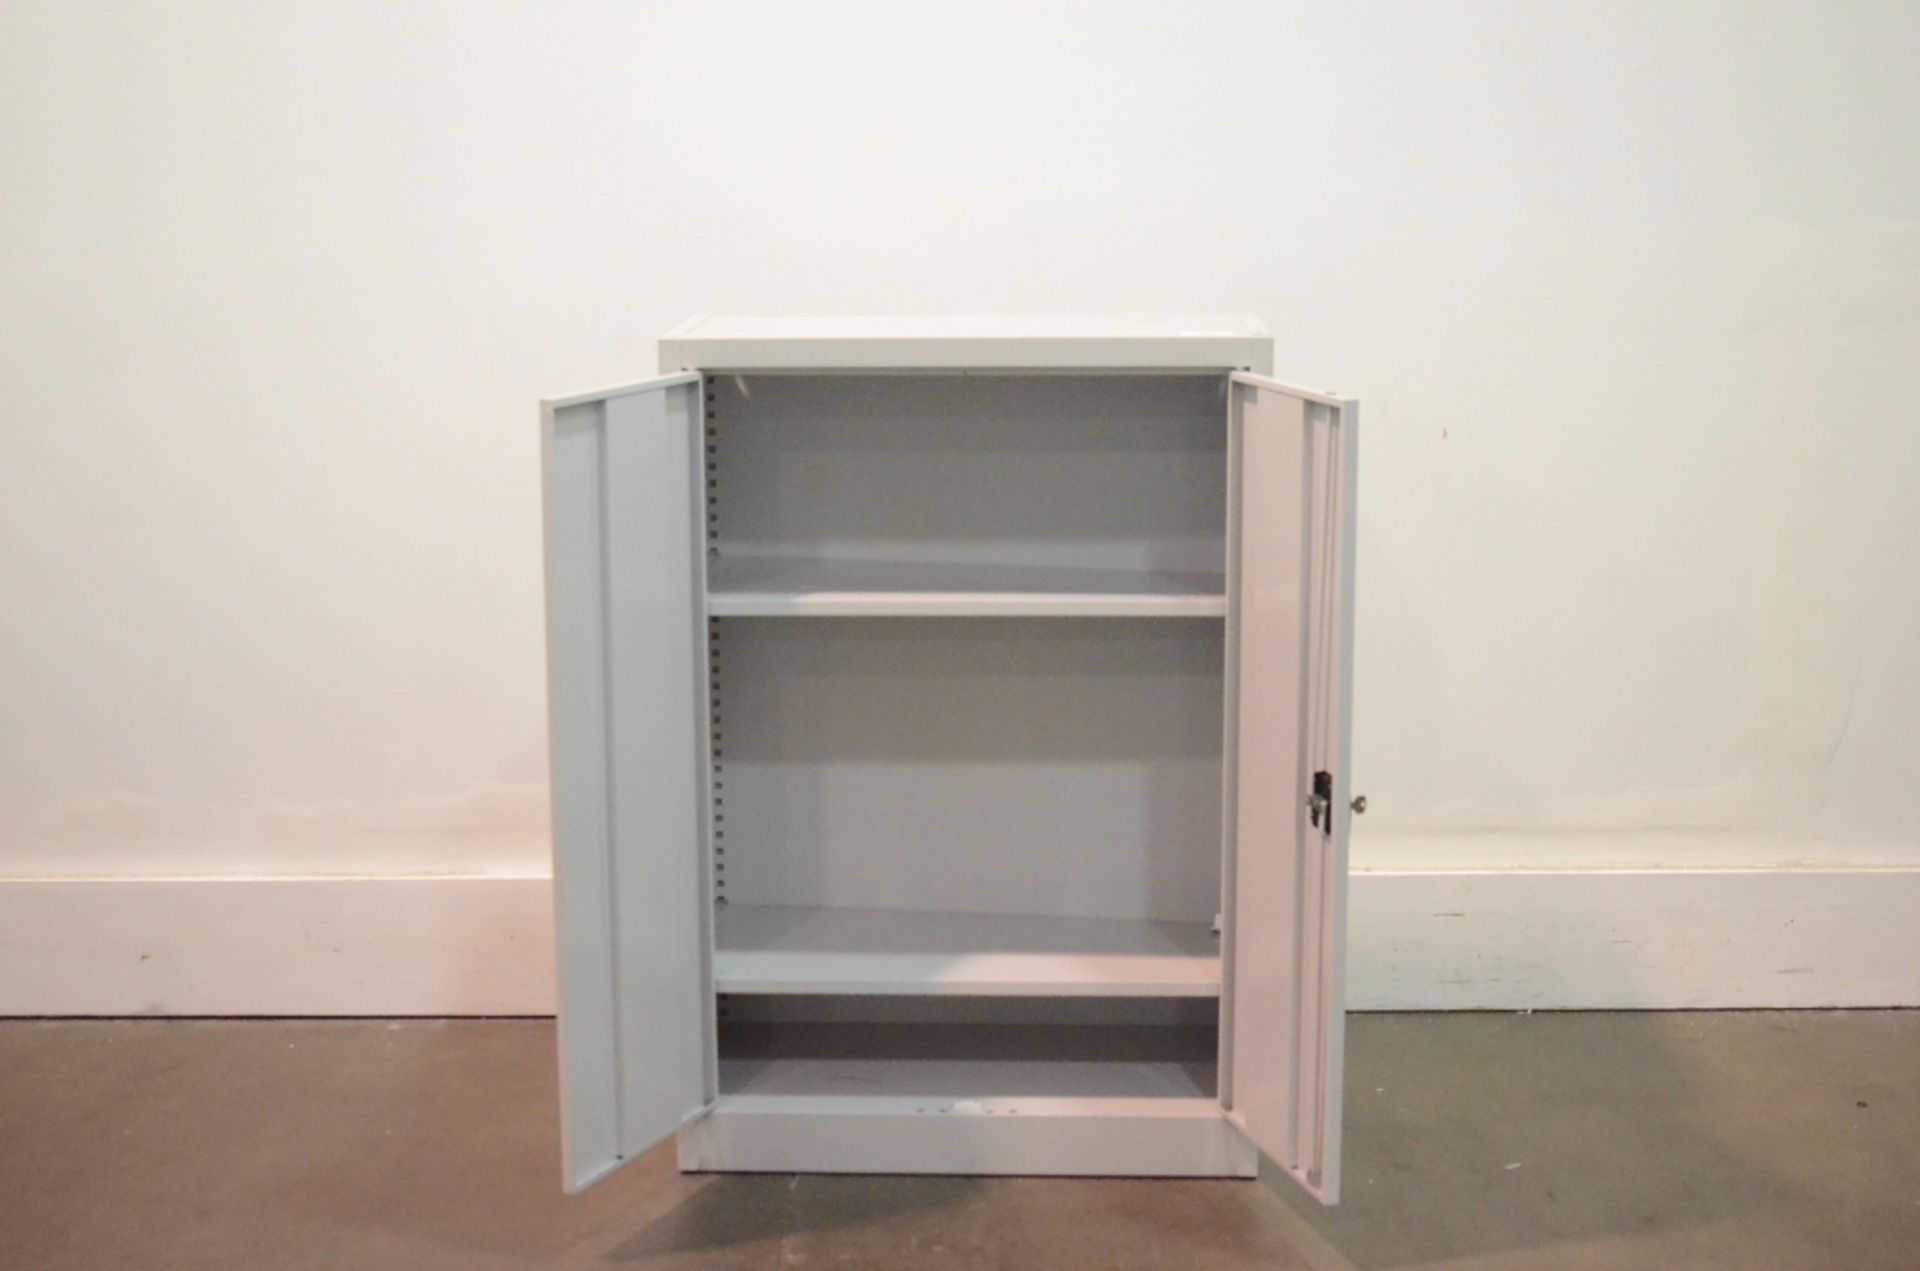 Burg Adjustable Shelves and Lockable Filing Cabinet - Image 2 of 2